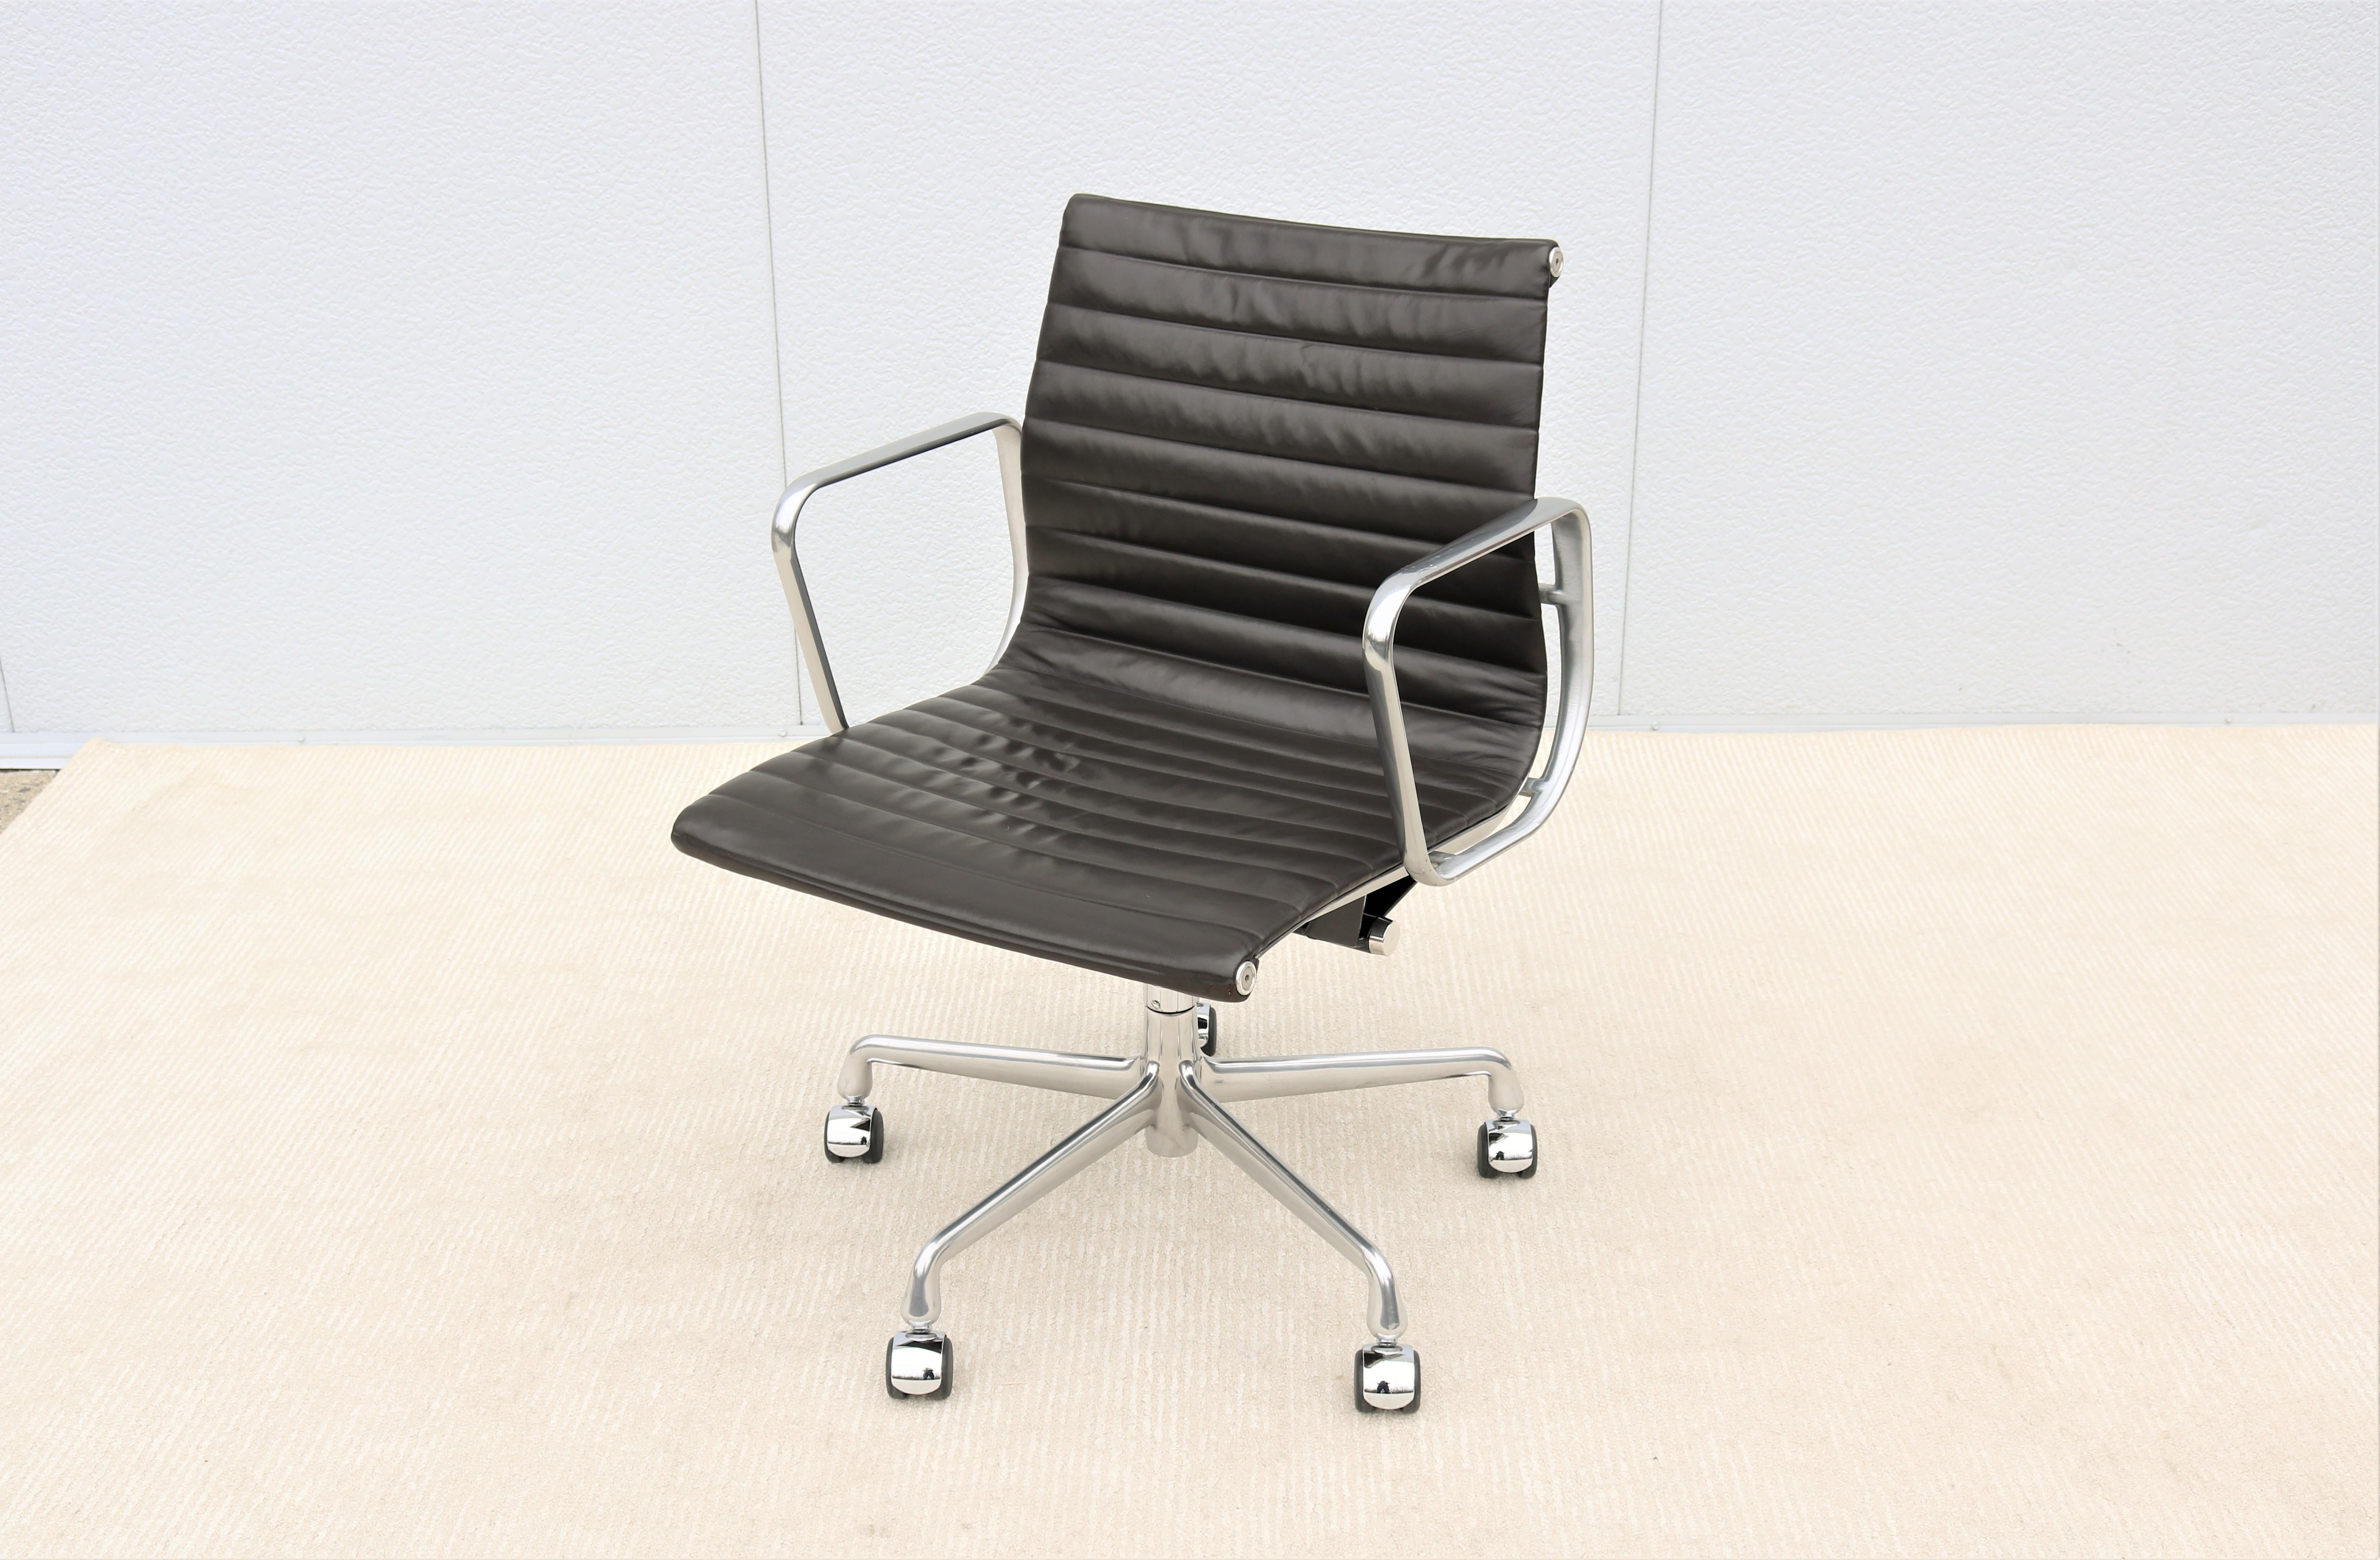 Atemberaubende authentische Mid-Century Modern Eames Aluminium Gruppe Management Stuhl.
Ein zeitloses Design, klassisch und modern, mit innovativen Komfortmerkmalen.
Einer der beliebtesten Stühle von Herman Miller wurde 1958 von Charles und Ray